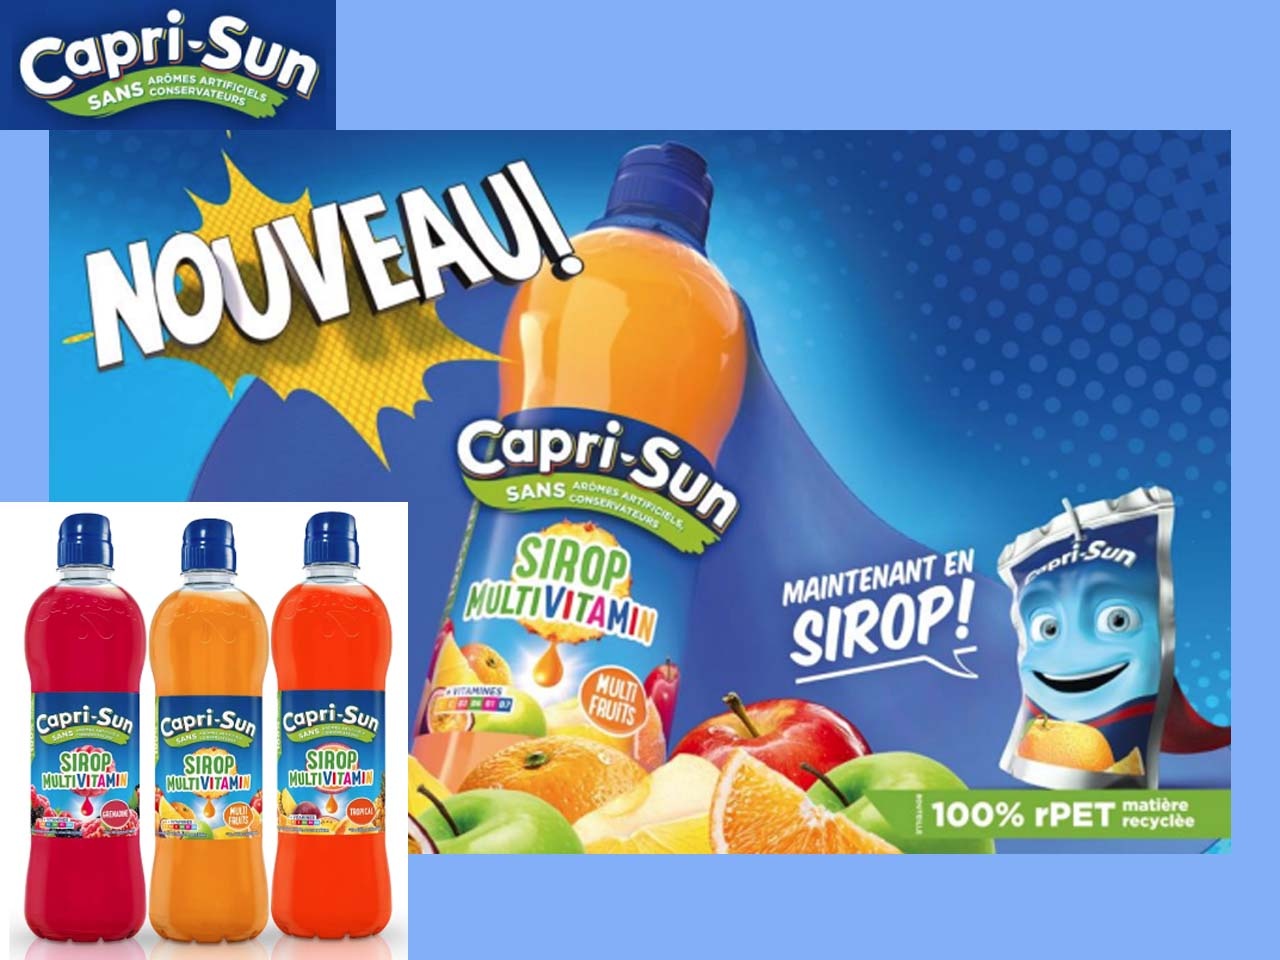 Capri-Sun lance une gamme de sirops enrichie en vitamines